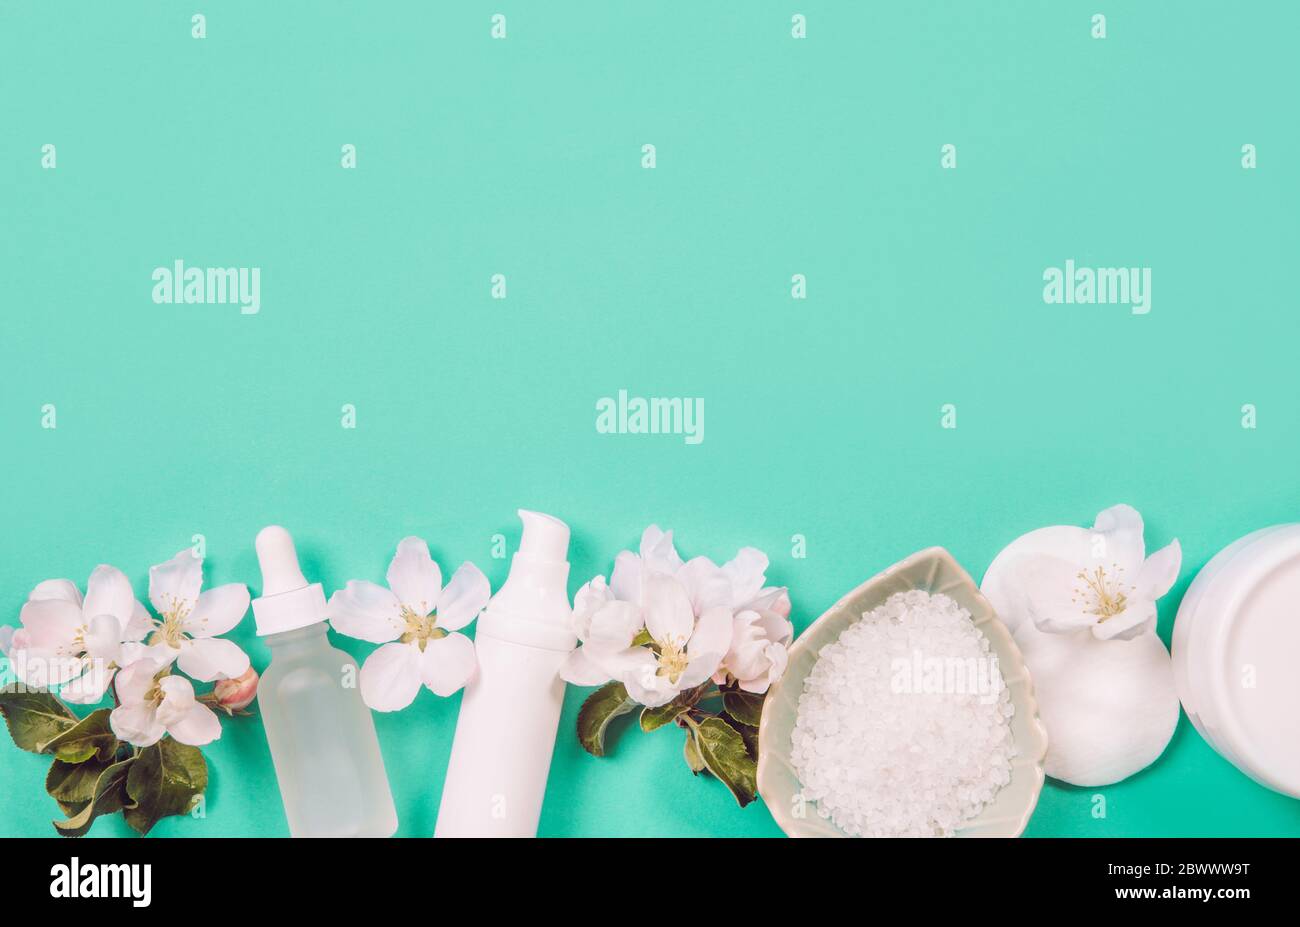 Draufsicht der generischen sauber reinen Frühling Schönheit Produkte Hintergrund mit Kopie Raum, Raum für Text in der Mitte. Weiße Behälter, mintgrüner Hintergrund. Stockfoto